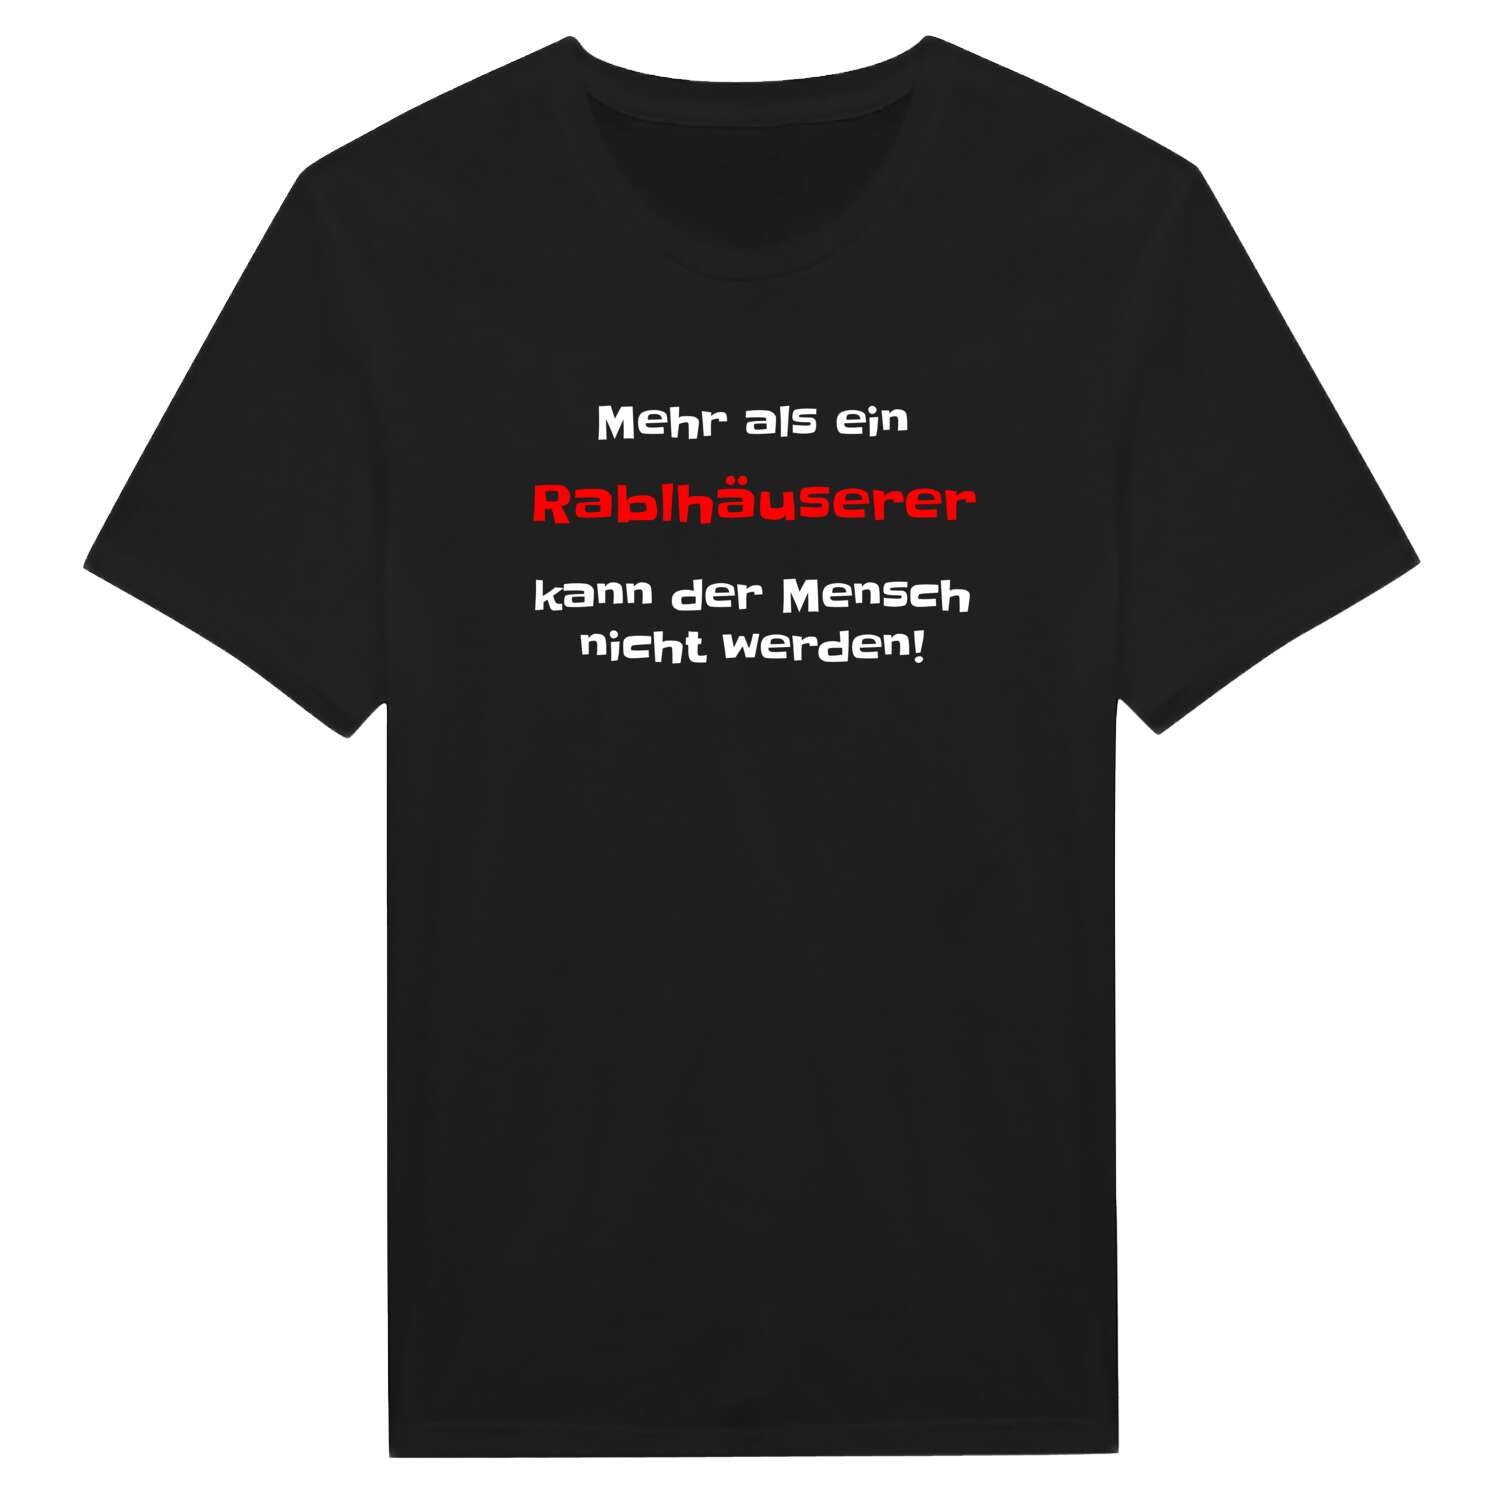 Rablhäuser T-Shirt »Mehr als ein«